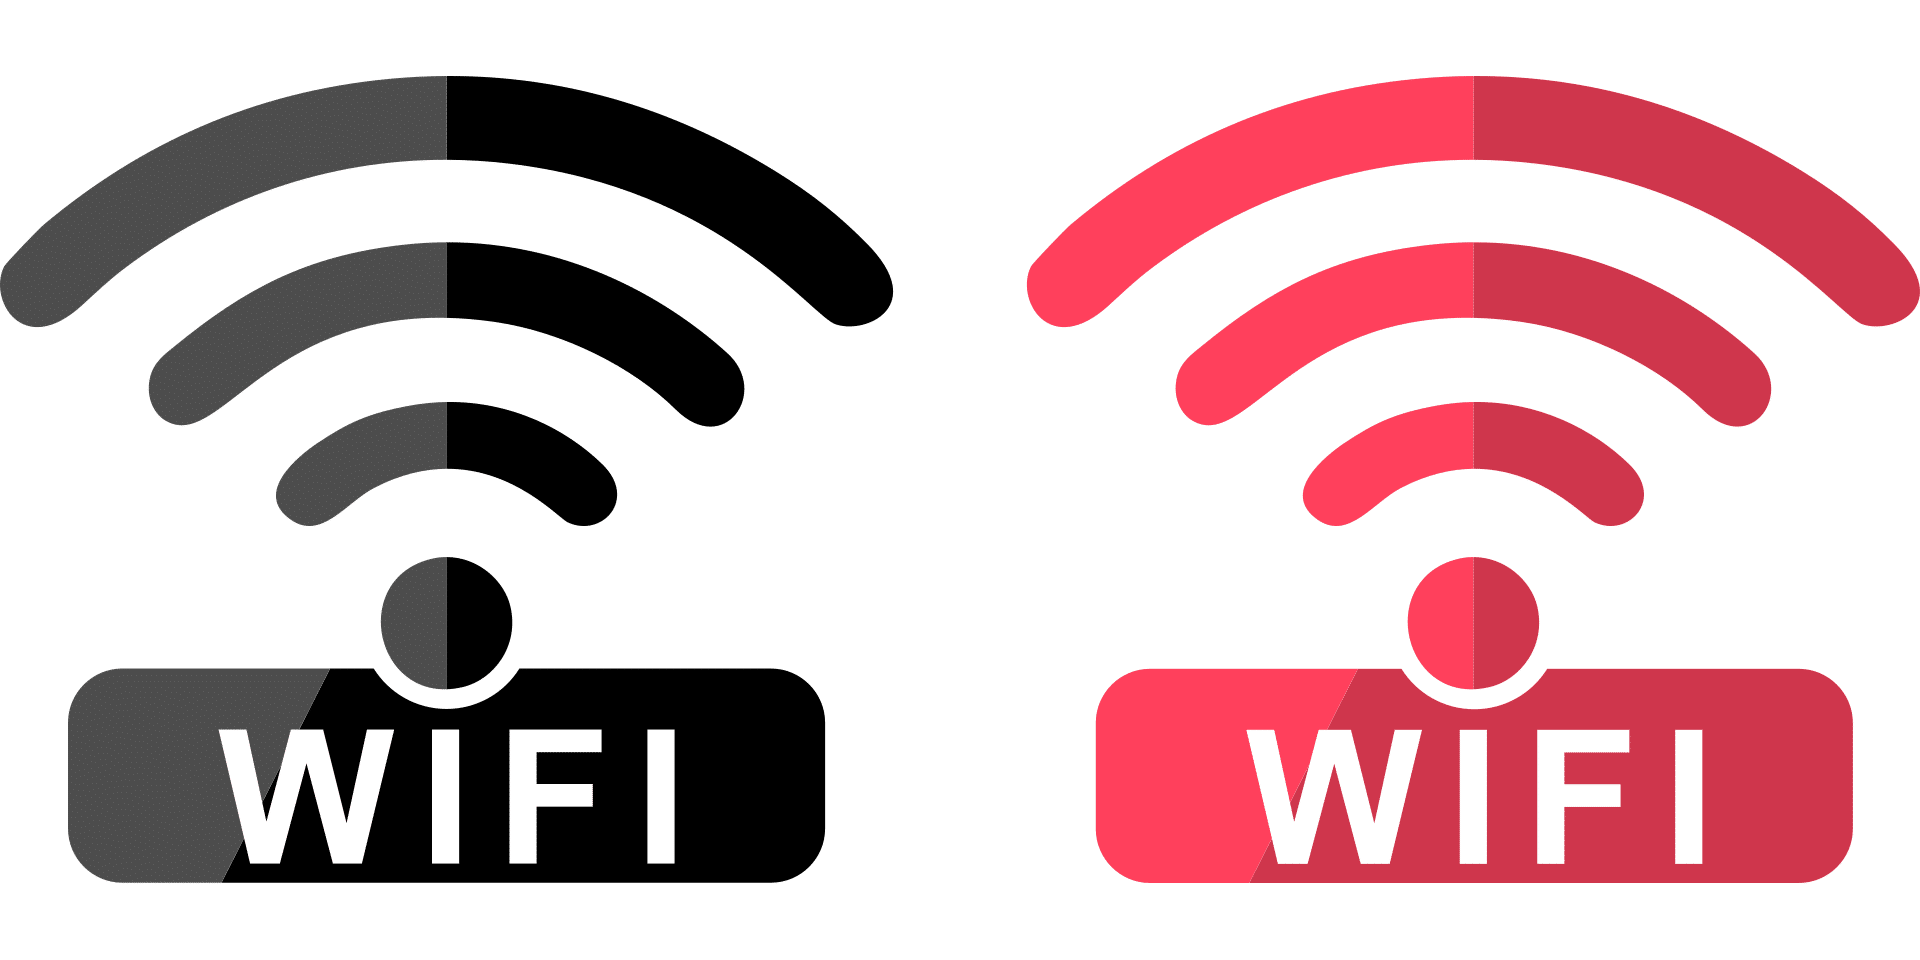 Wifi over wifi. Wi-Fi логотип. Иконка WIFI. Знак Wi-Fi. Логотип вайфай.